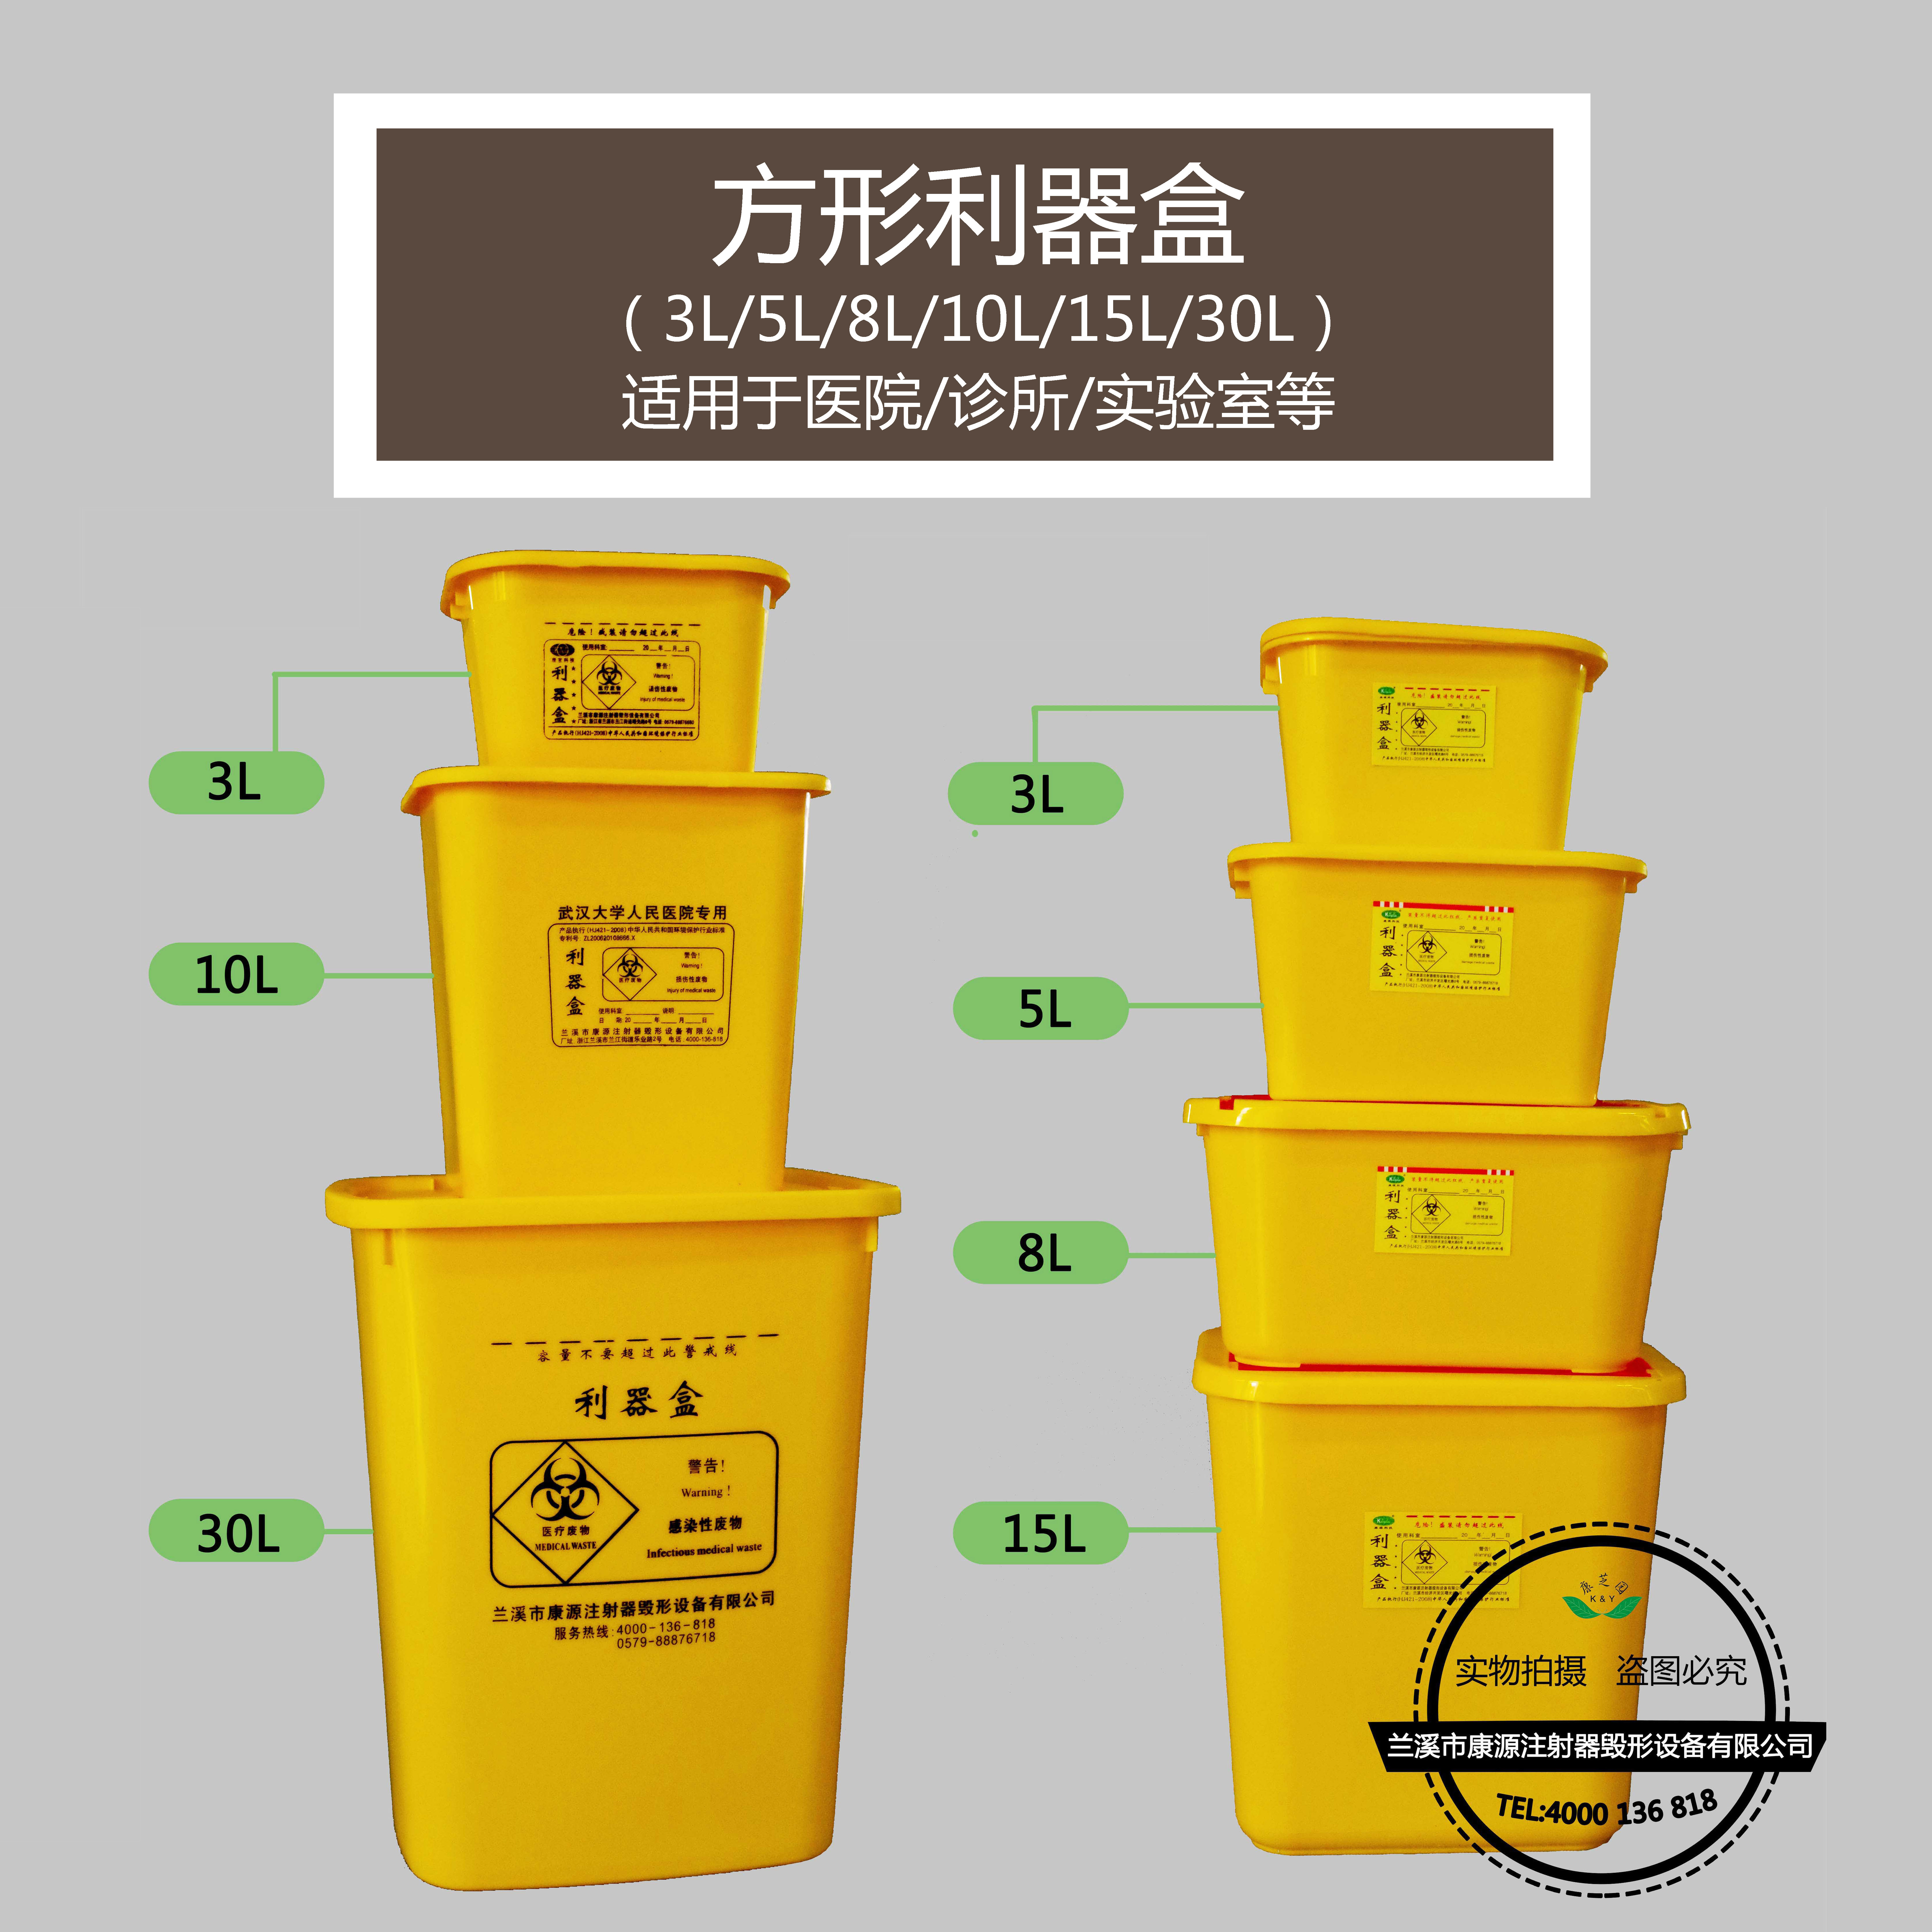 医疗方形利器盒 多规格 黄色 ，适用于医院/诊所/实验室等图片